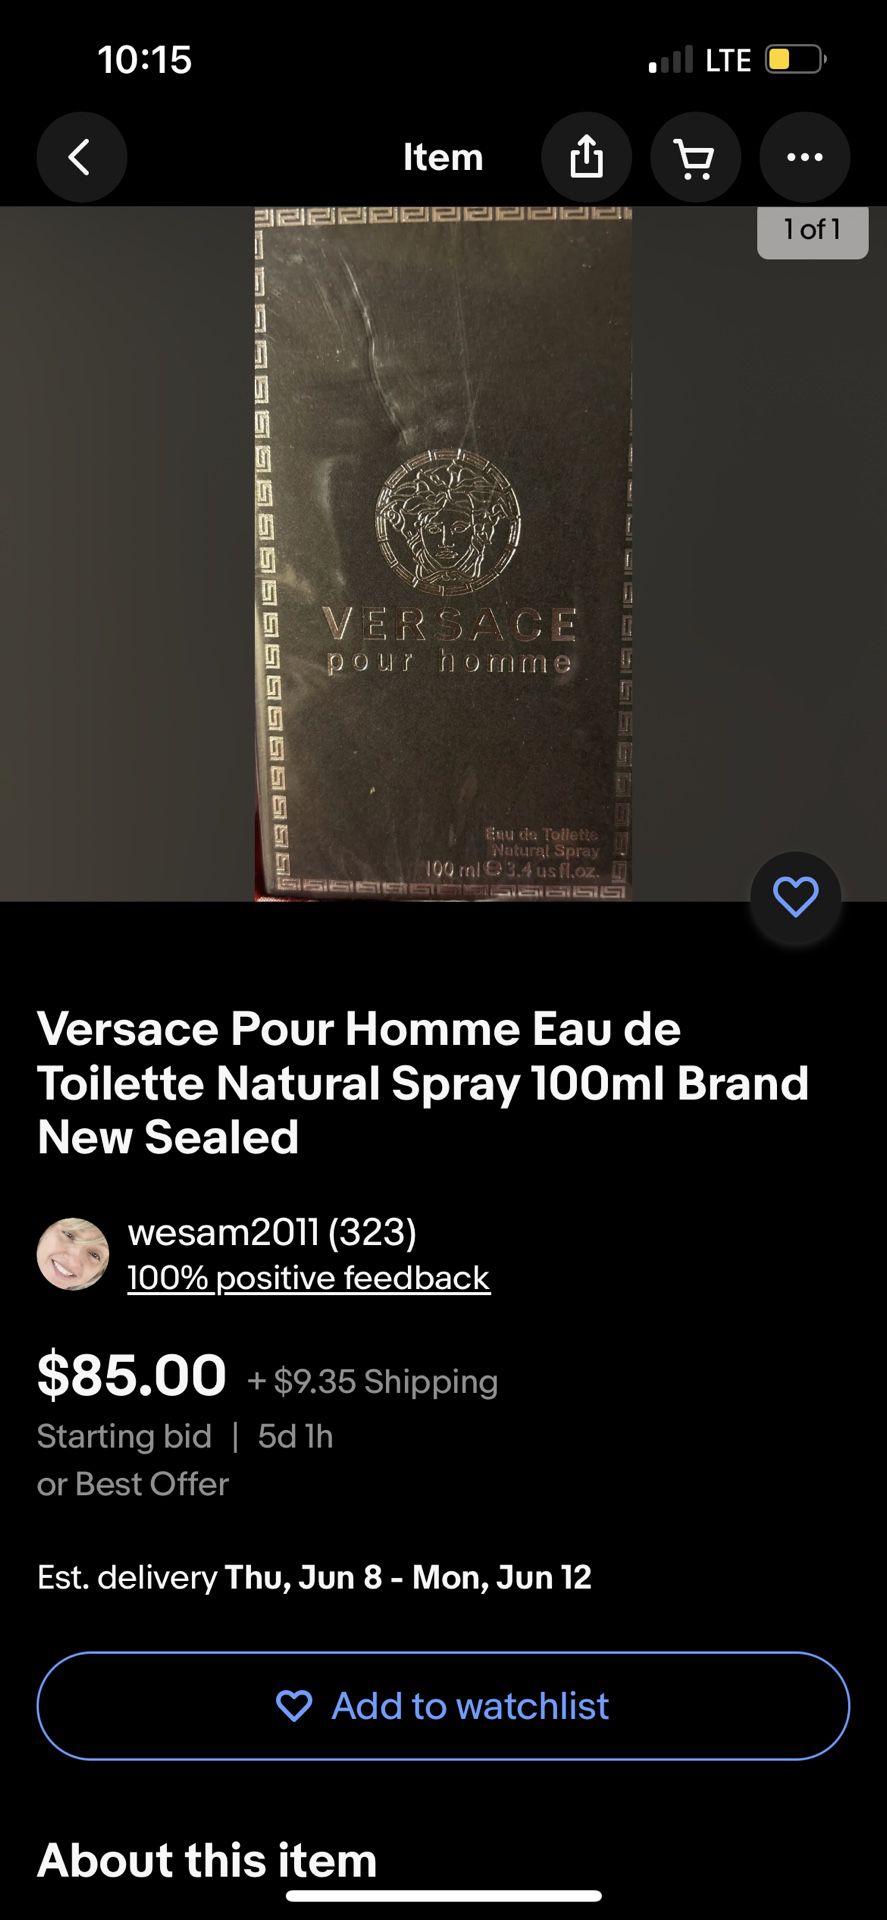 Versace Pour Homme Eau de Toilette Natural Spray 100ml Brand New Sealed